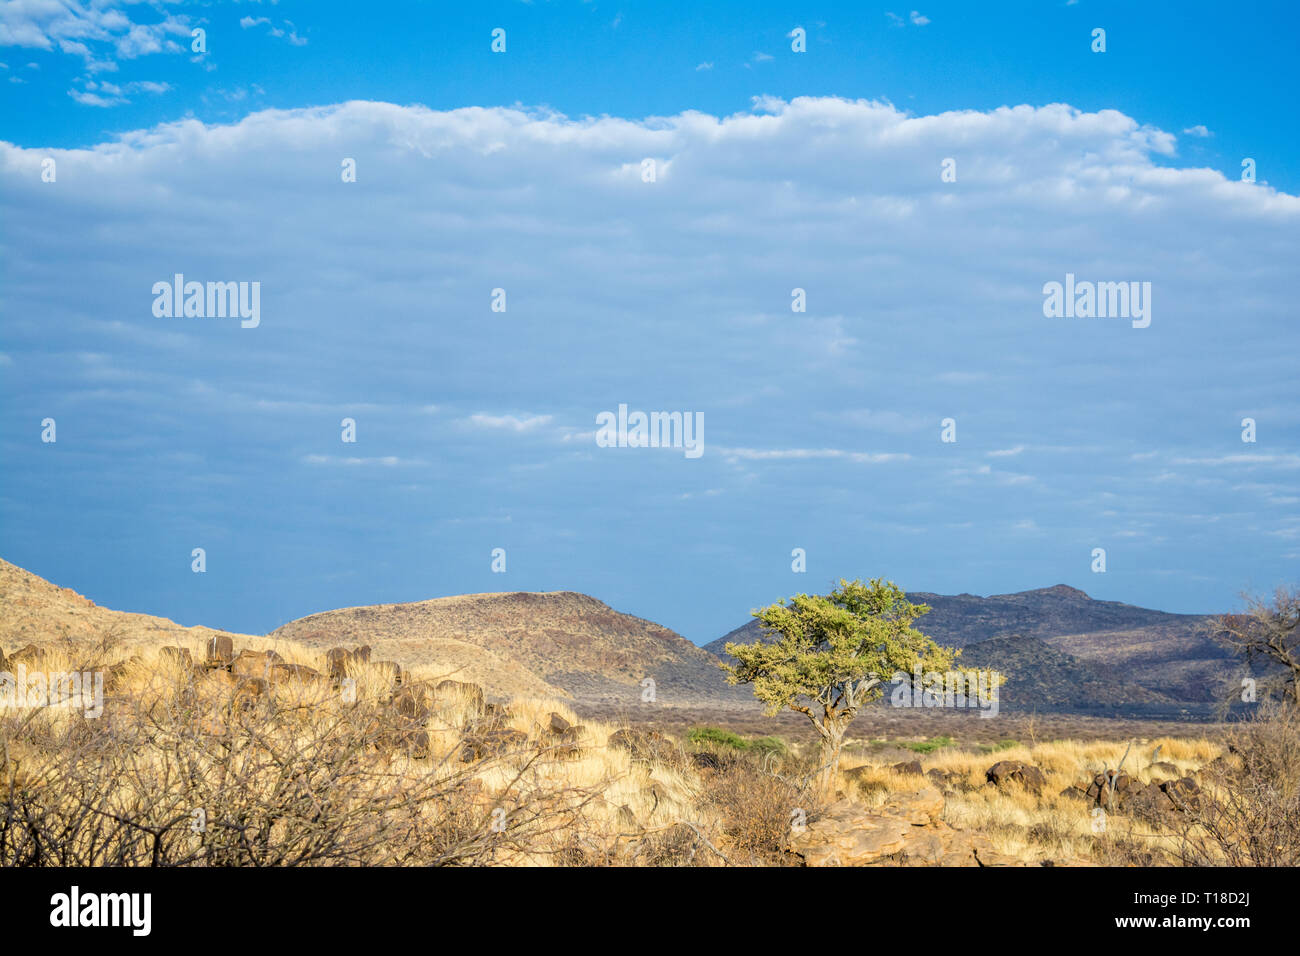 Akazien in der Savanne, Namibia Stockfoto